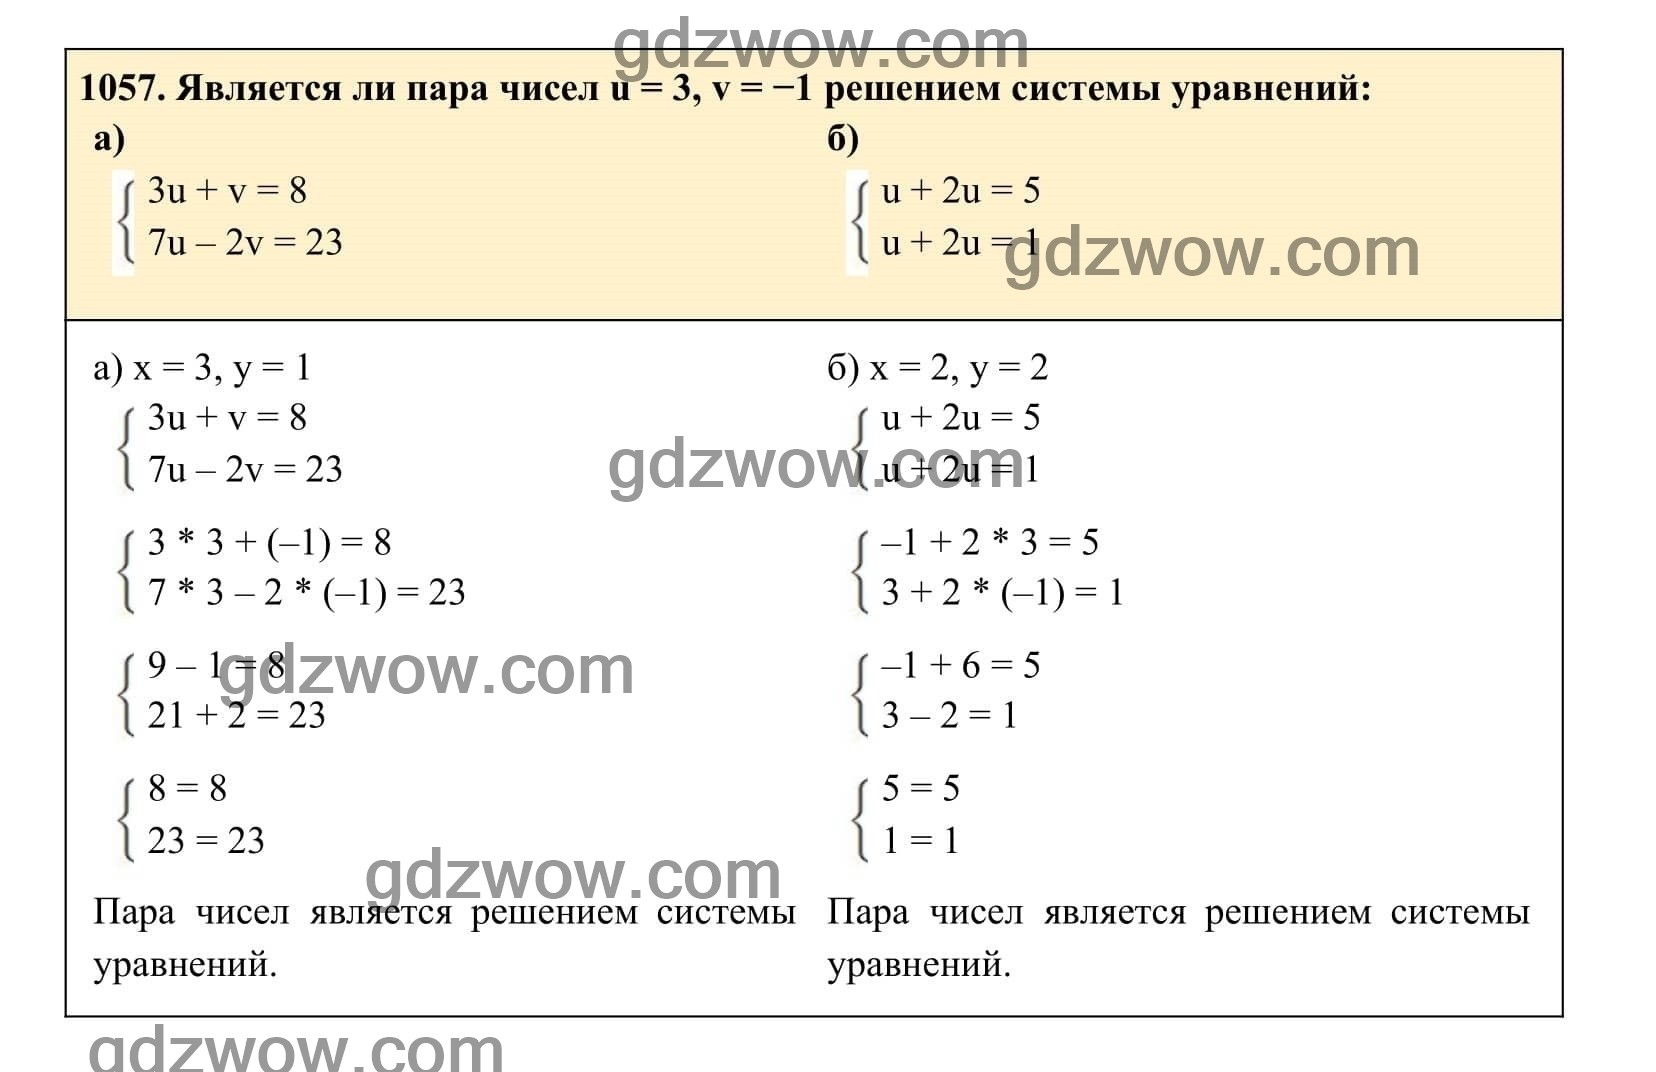 Упражнение 1057 - ГДЗ по Алгебре 7 класс Учебник Макарычев (решебник) - GDZwow